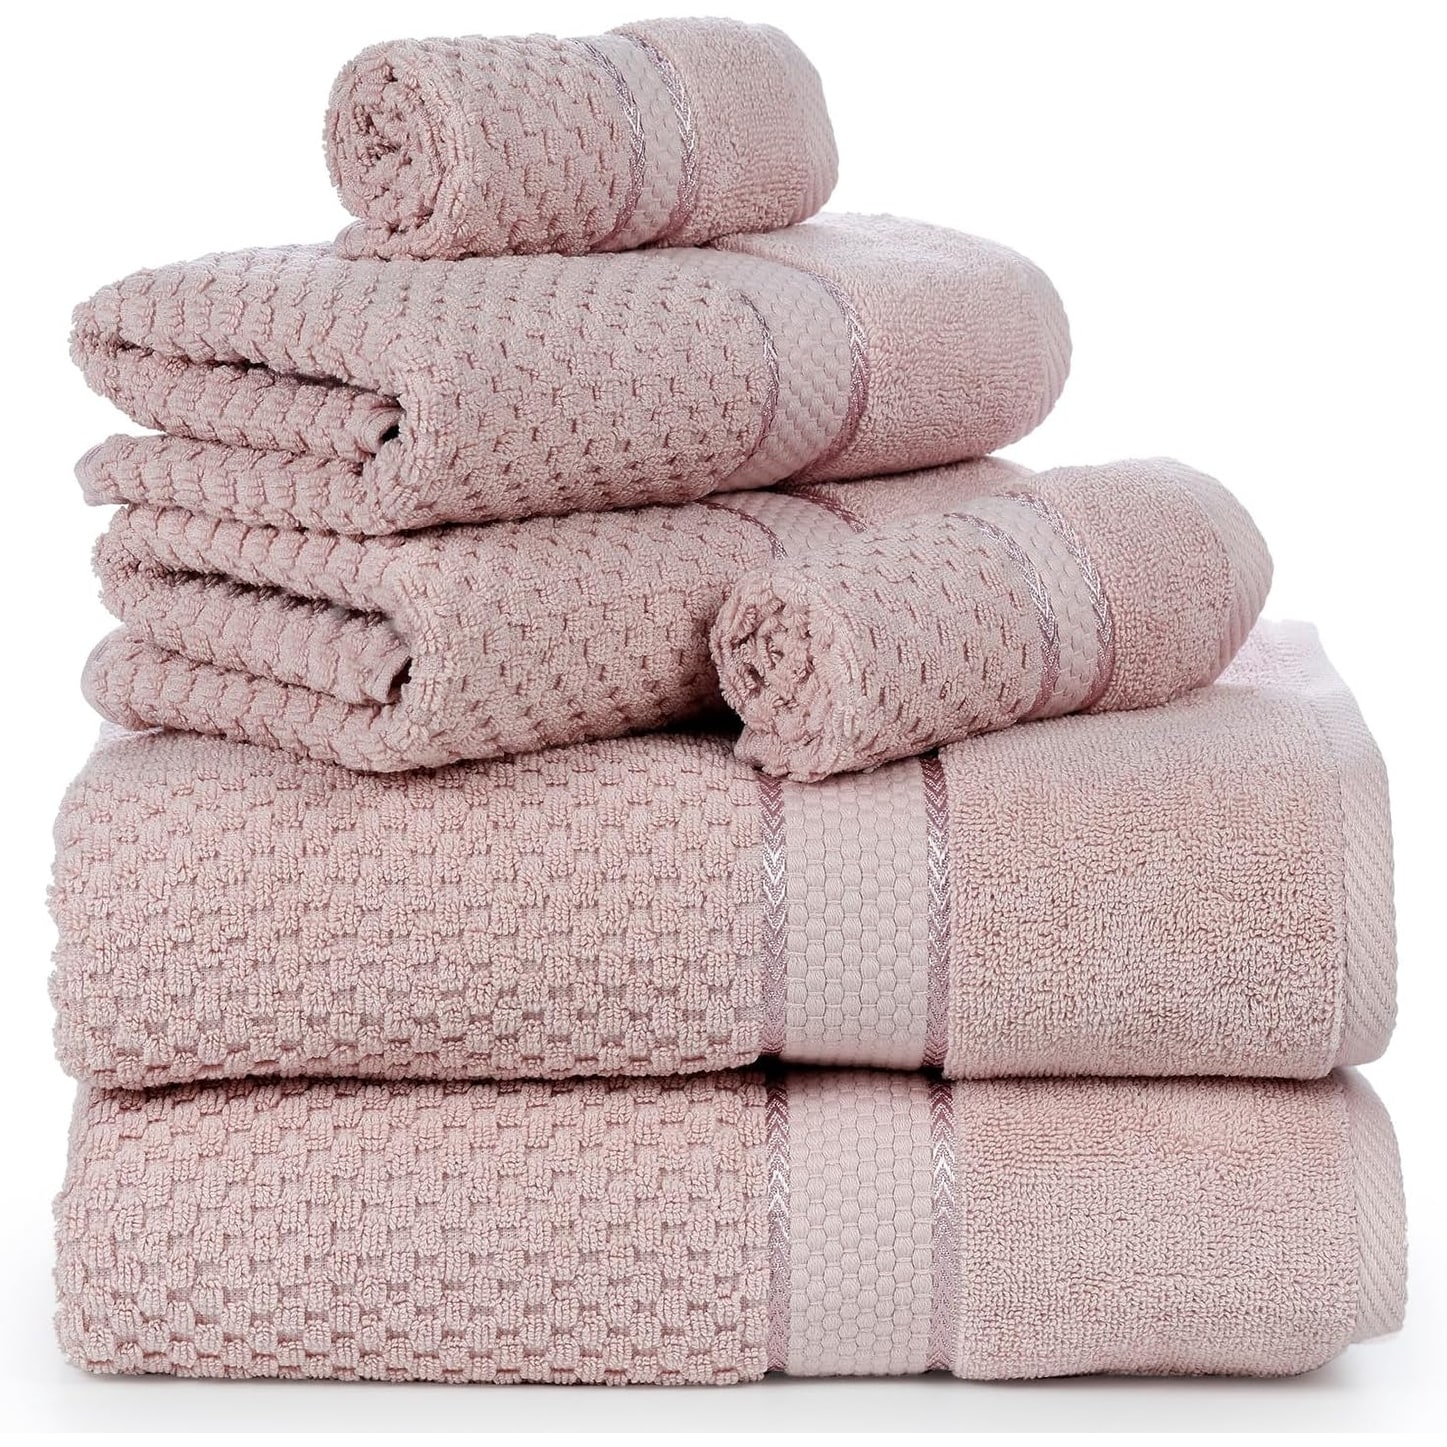 Salem Linen 6 Piece 100% Cotton Bath Towel Set